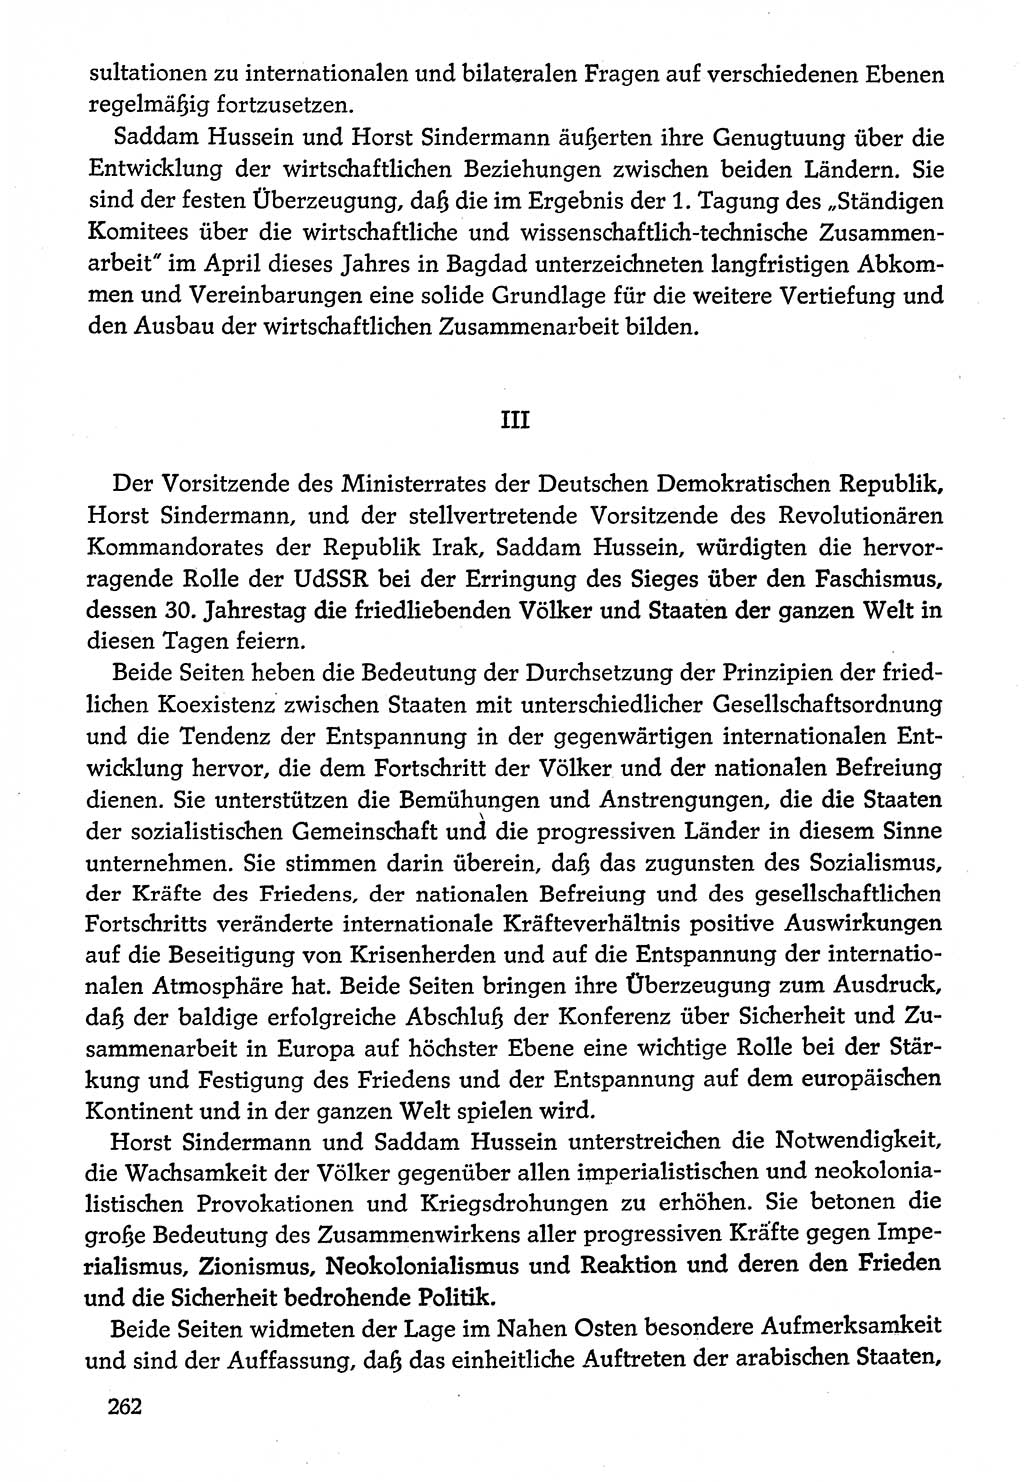 Dokumente der Sozialistischen Einheitspartei Deutschlands (SED) [Deutsche Demokratische Republik (DDR)] 1974-1975, Seite 262 (Dok. SED DDR 1978, Bd. ⅩⅤ, S. 262)